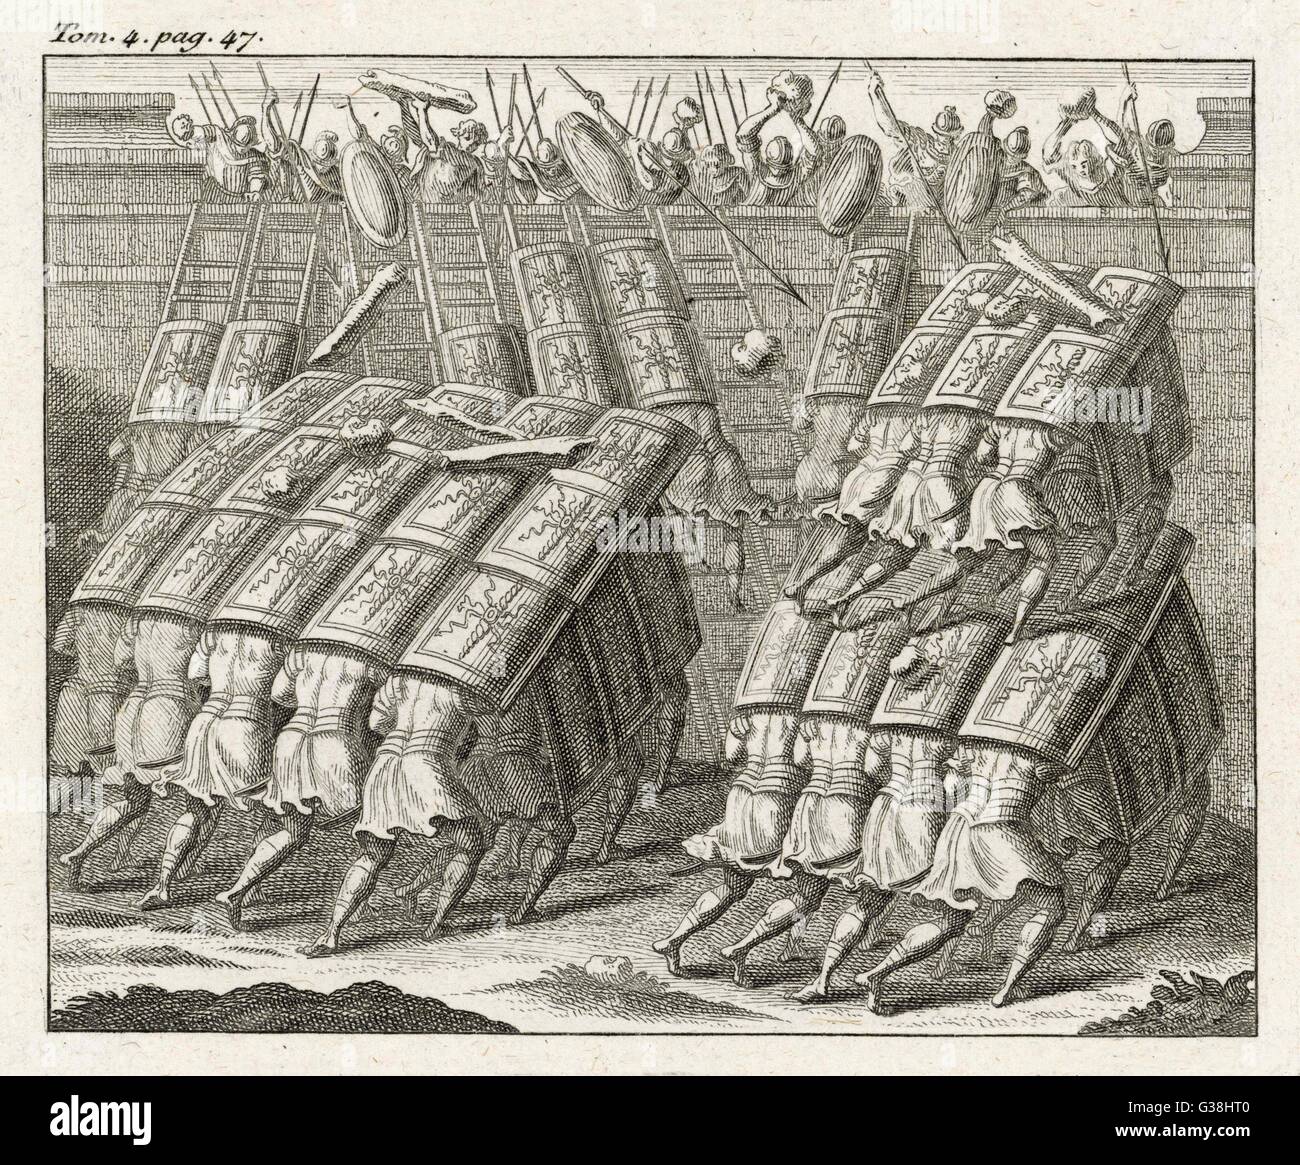 Die TESTUDO (Schildkröte), einer römischen Belagerung Technik mit überlappenden Schilde, geben Schutz vor Pfeilen und siedendem Öl, sowie als Plattform um Angreifer zu erhöhen Stockfoto